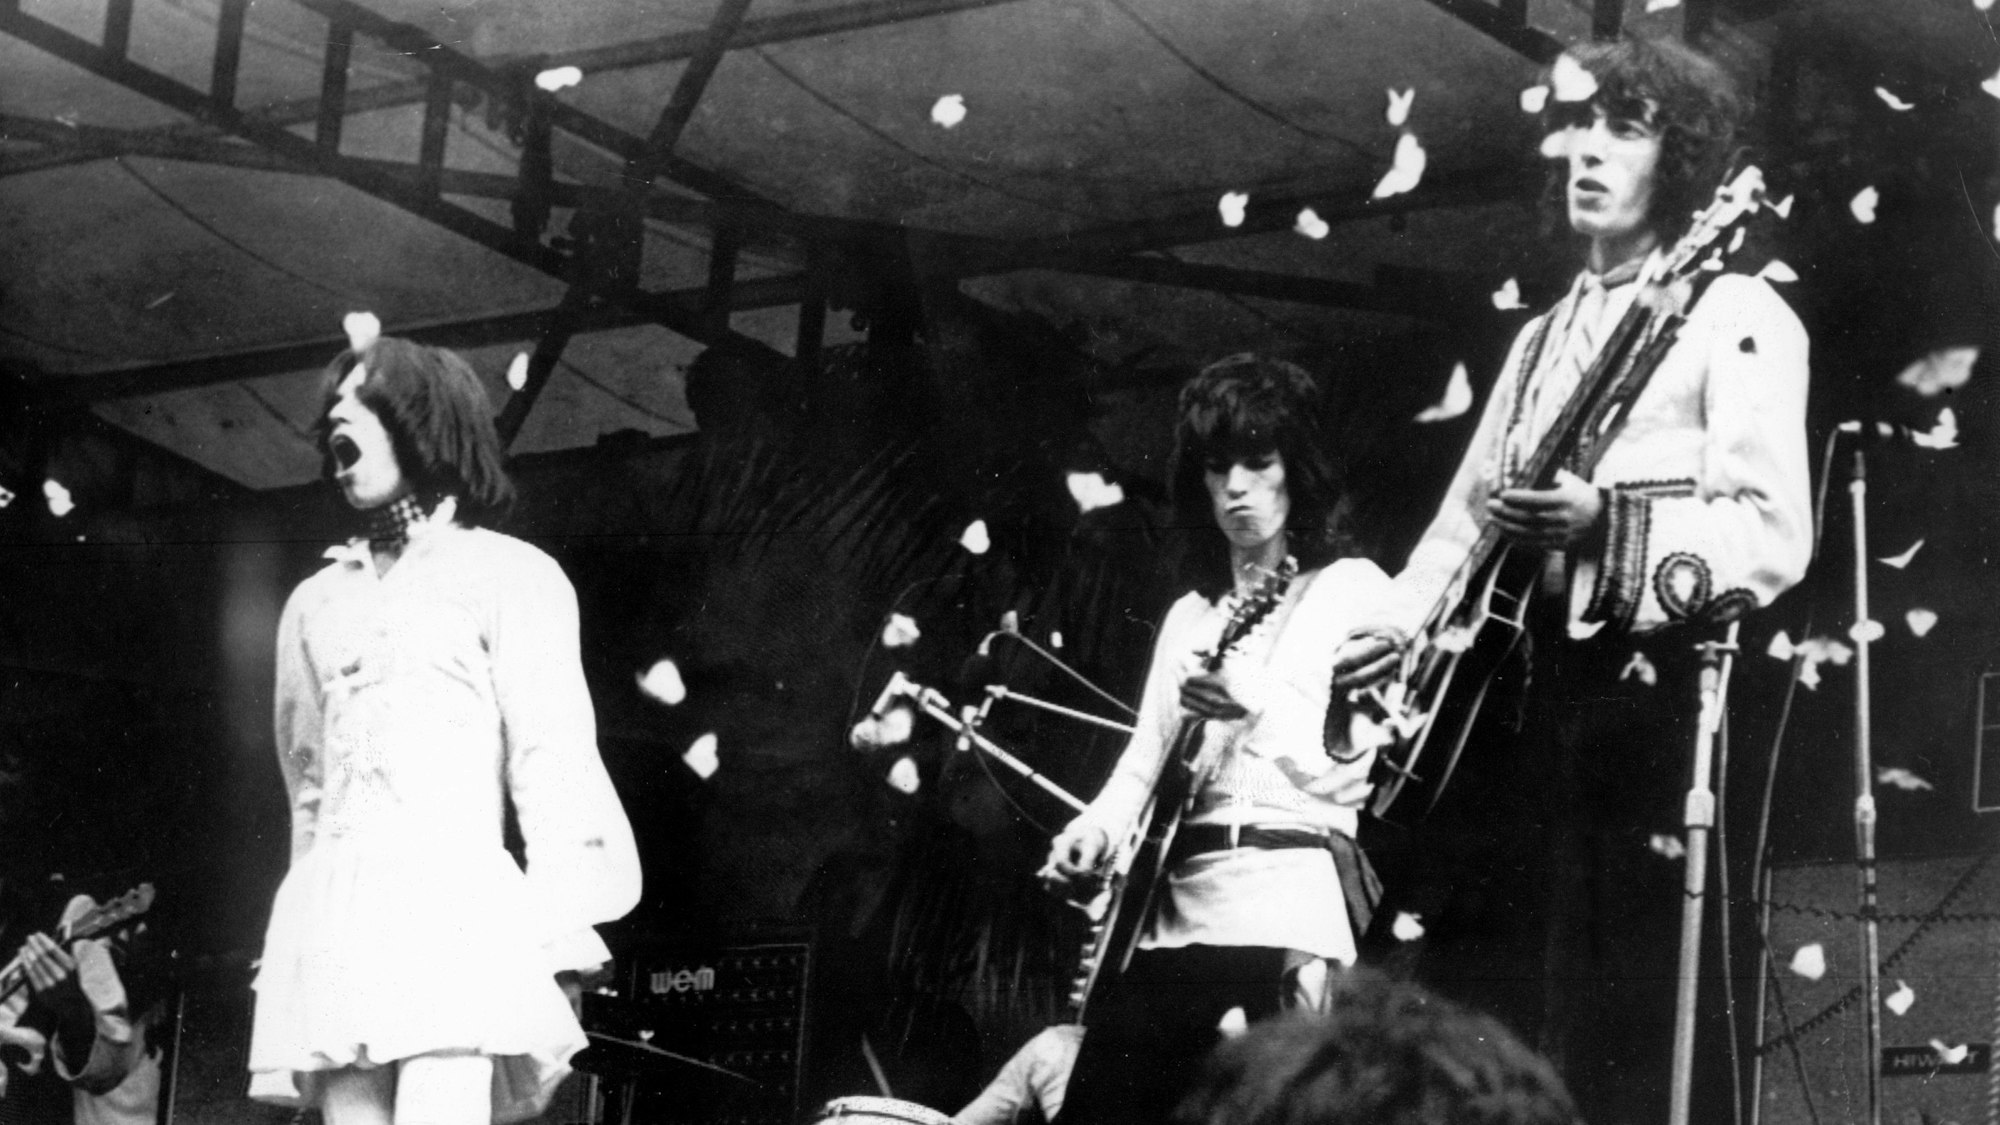 ARCHIV - 05.07.1969, Großbritannien, London: Frontman Mick Jagger (l-r), Rond Wood und Keith Richards von den Rolling Stones stehen auf der Bühne im Hyde Park, während Tausende von freigelassenen Schmetterlingen sie umschwärmen. (zu dpa-Korr "Vor 60 Jahren: Die Stones spielen in London ihr erstes Konzert") Foto: UPI/dpa +++ dpa-Bildfunk +++